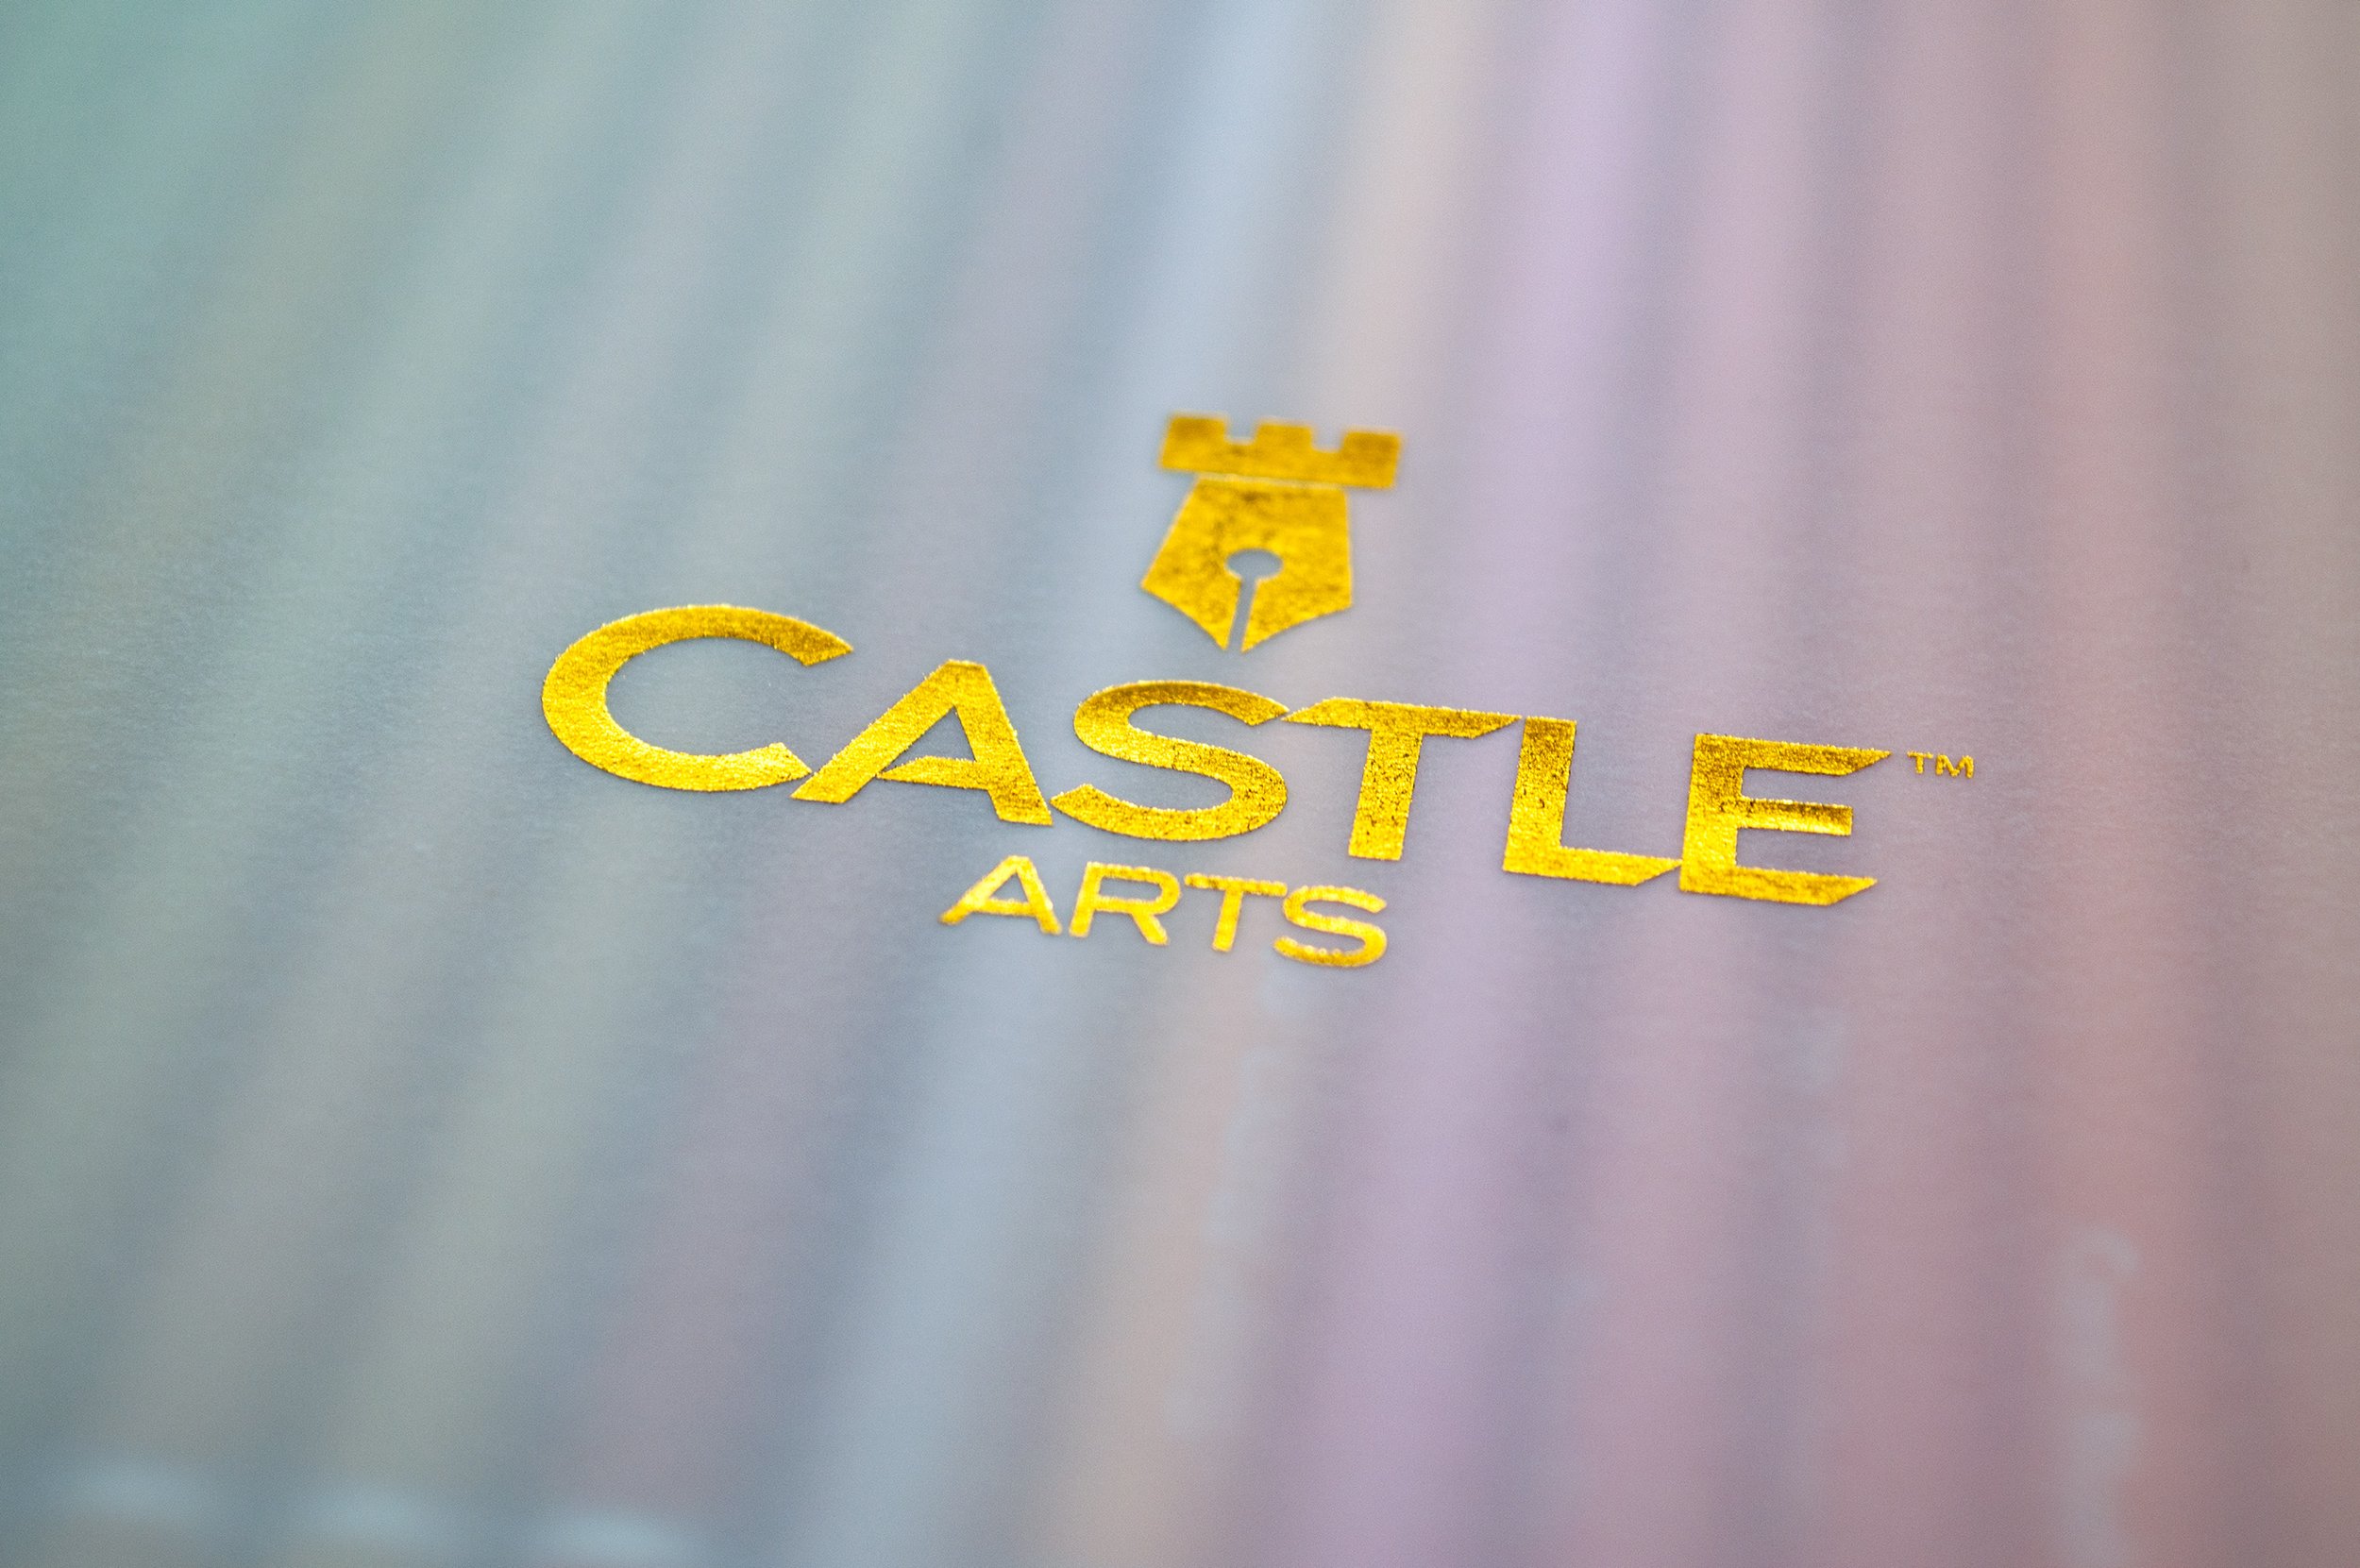 https://images.squarespace-cdn.com/content/v1/5816496ef5e2319b546c5d19/c4df6751-17e2-4be0-9690-121fc8d6673e/Castle+Logo+on+Tracing+Layer.jpg